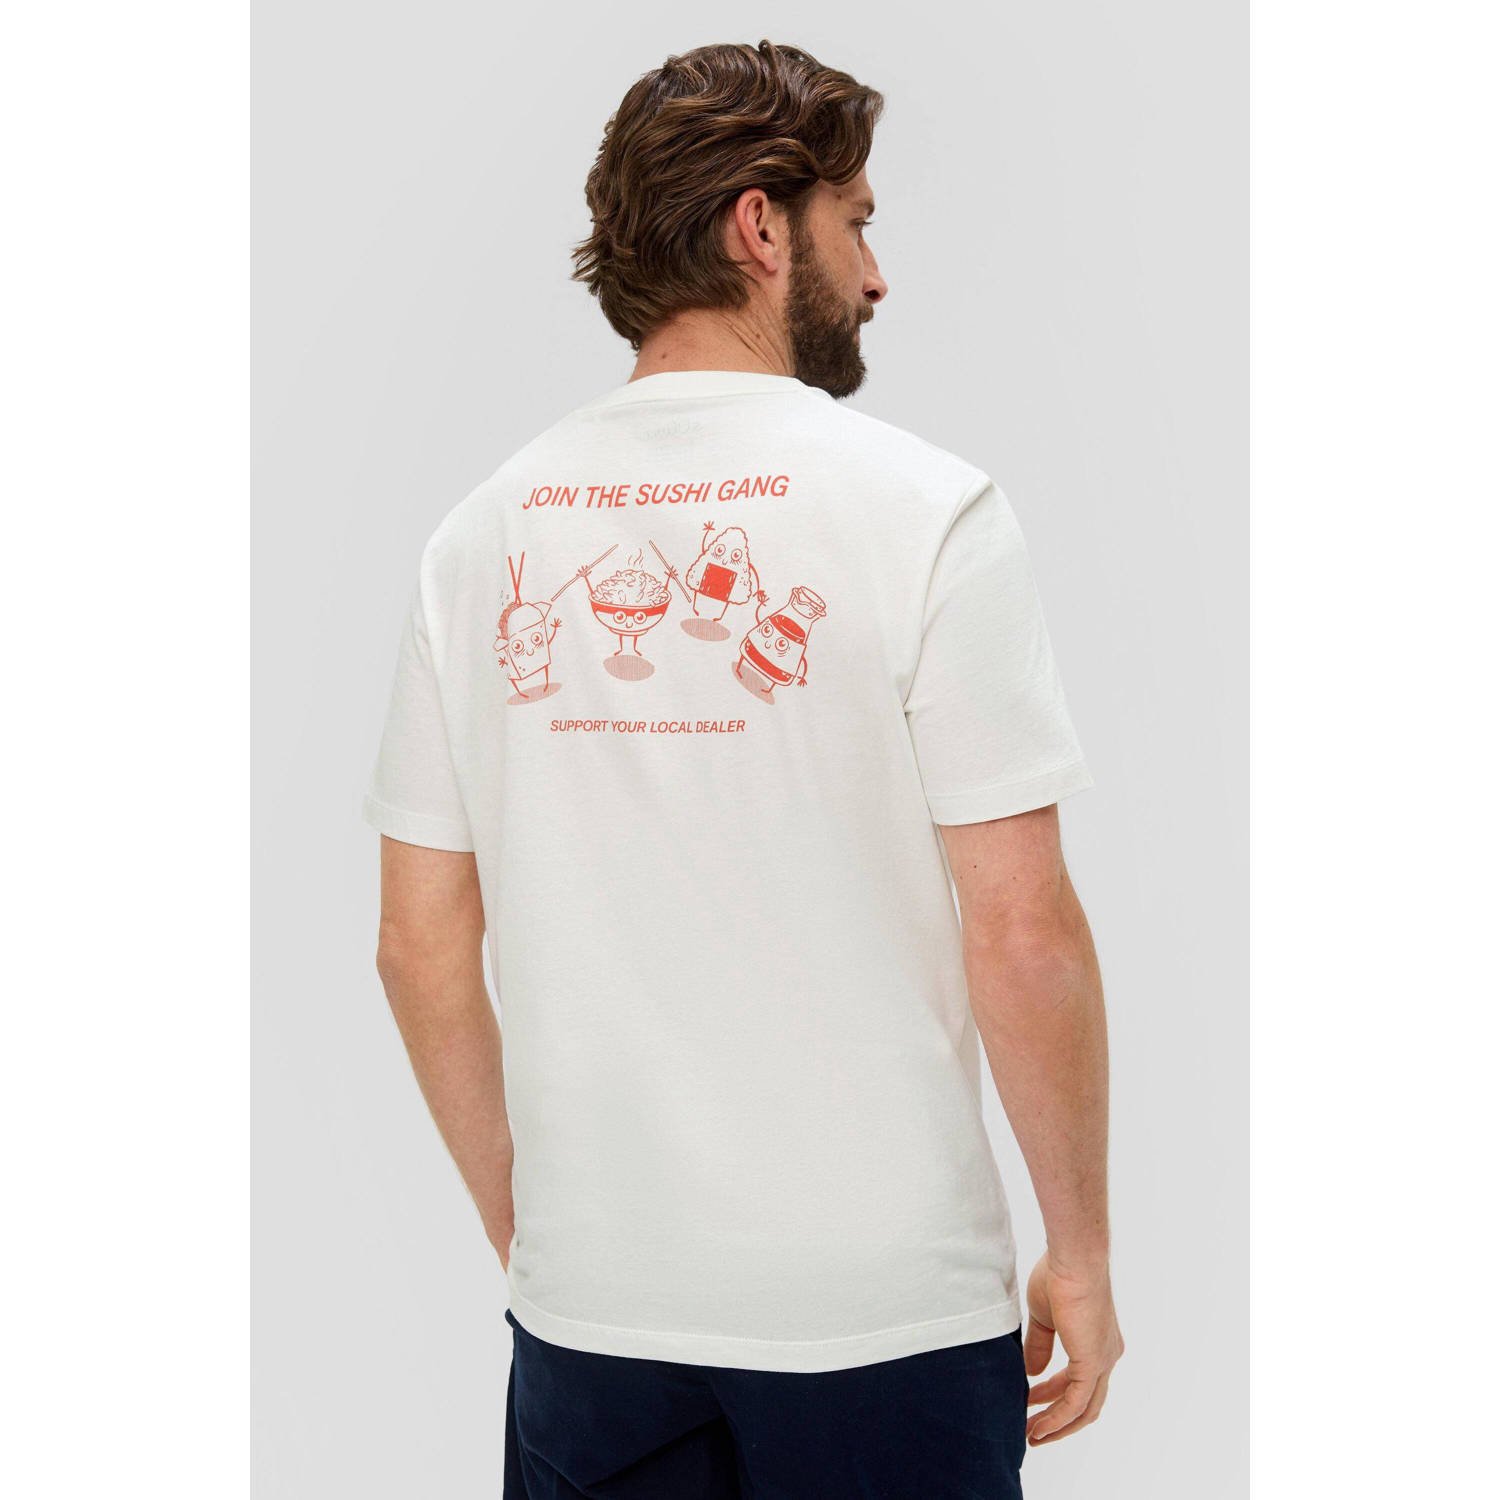 S.Oliver RED LABEL T-shirt met motiefprint